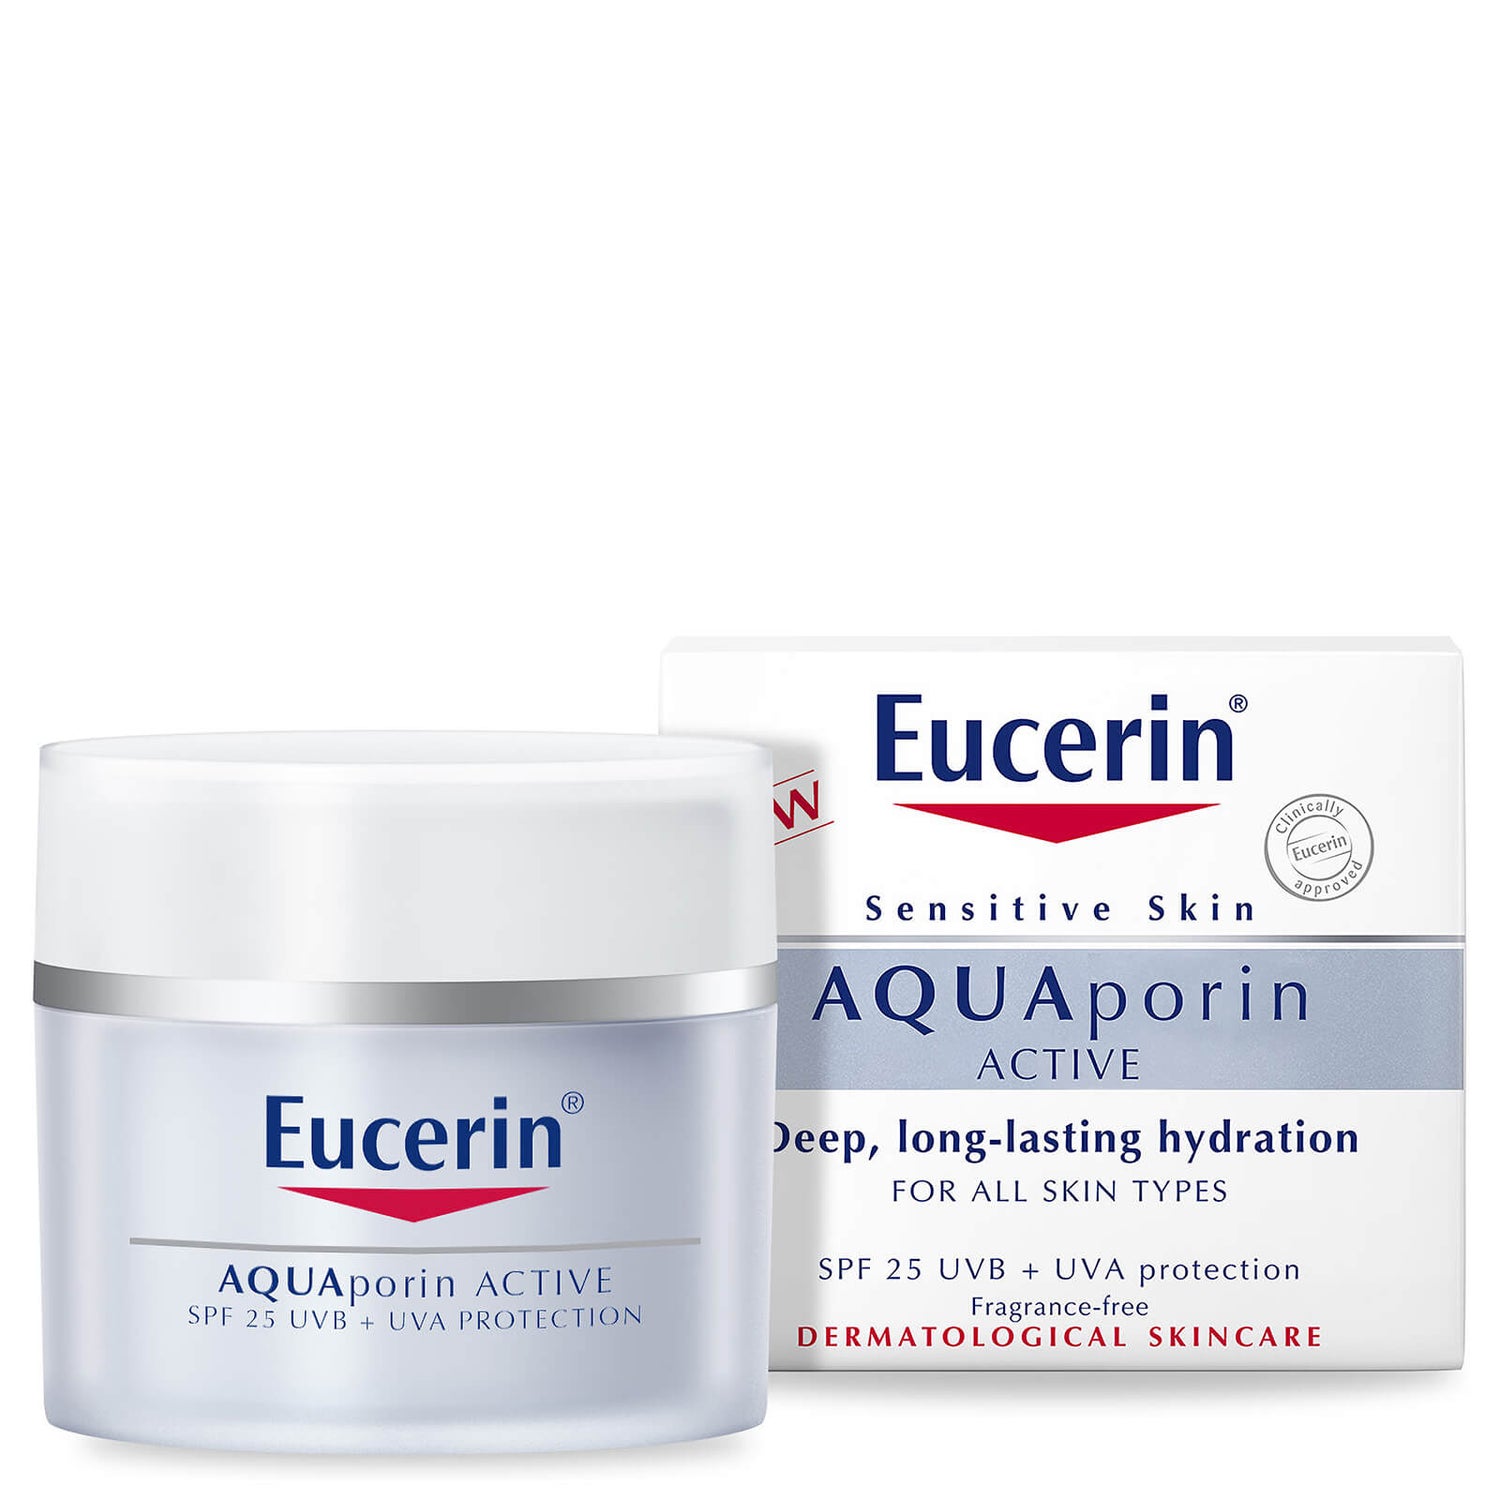 Eucerin® Aquaporin Active com FPS 25 e Proteção UVB + UVA (50 ml)